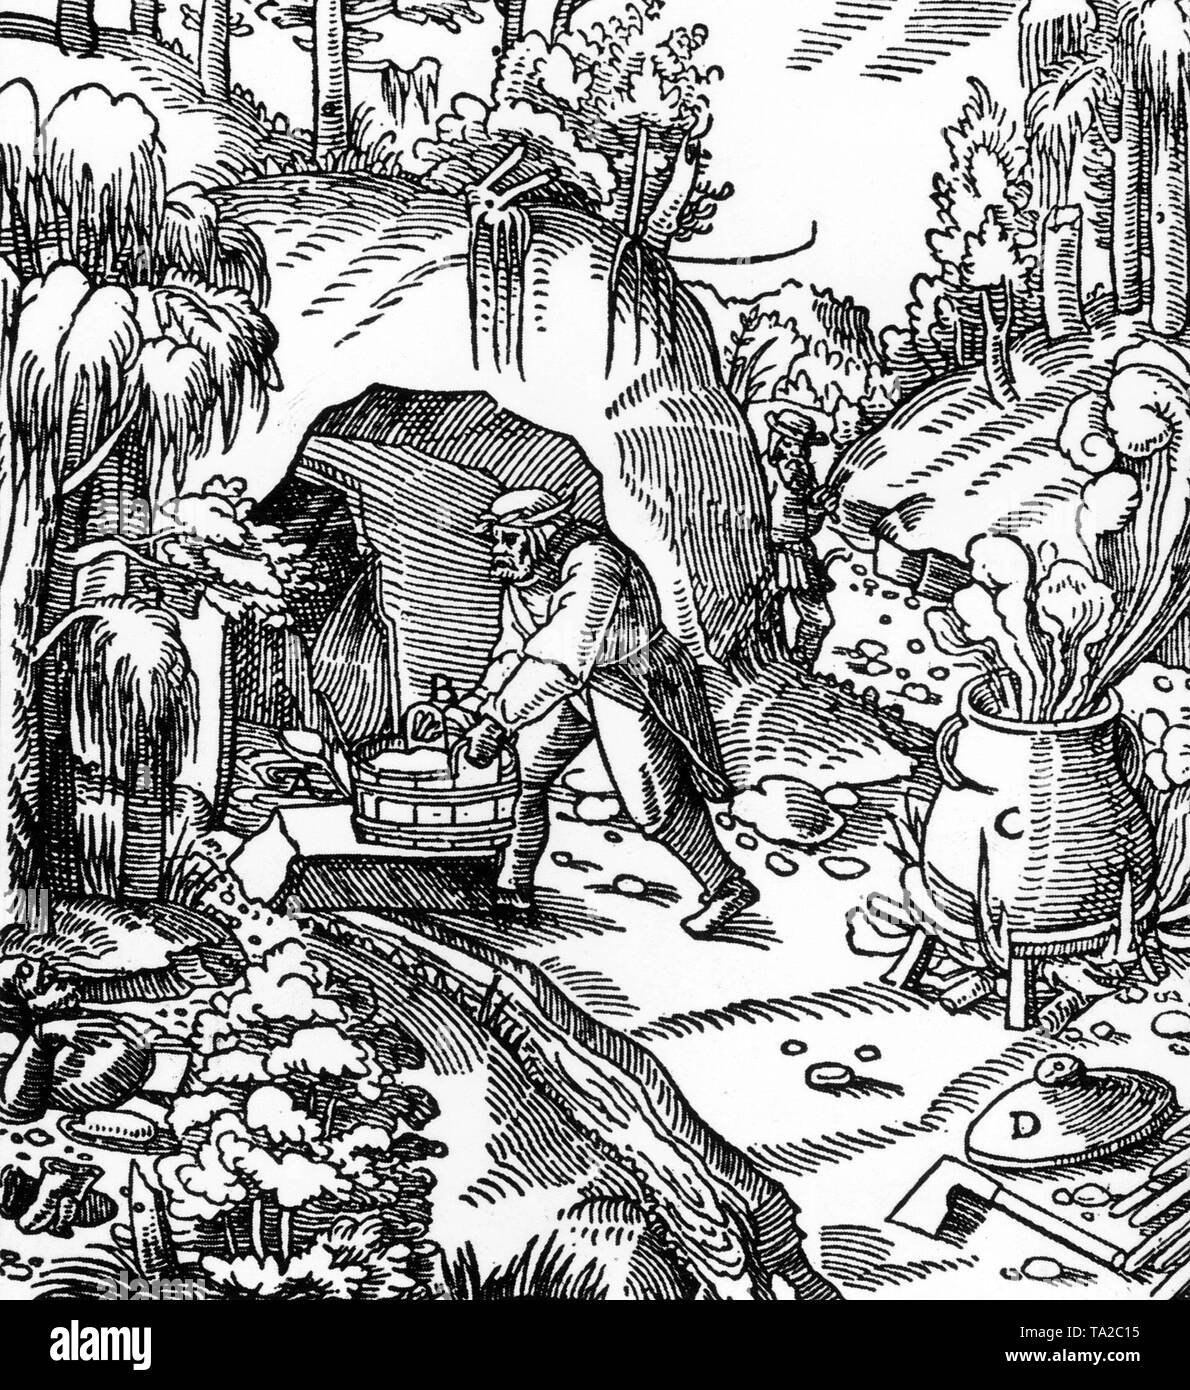 Präsentation der Erdölförderung durch Absorption von Wasser (A) und (B) und die Destillation des Öls in einem Wasserkocher (C) mit Deckel (D). Das öl wurde für Lampen und Fackeln verwendet, als Holzschutzmittel und als Warenkorb schmieren. Die Zeichnung ist aus dem Buch "De Re Metallica" durch den Sächsischen gelehrten Agricola (1494 -1555), einem der Gründer der Geowissenschaften. Stockfoto